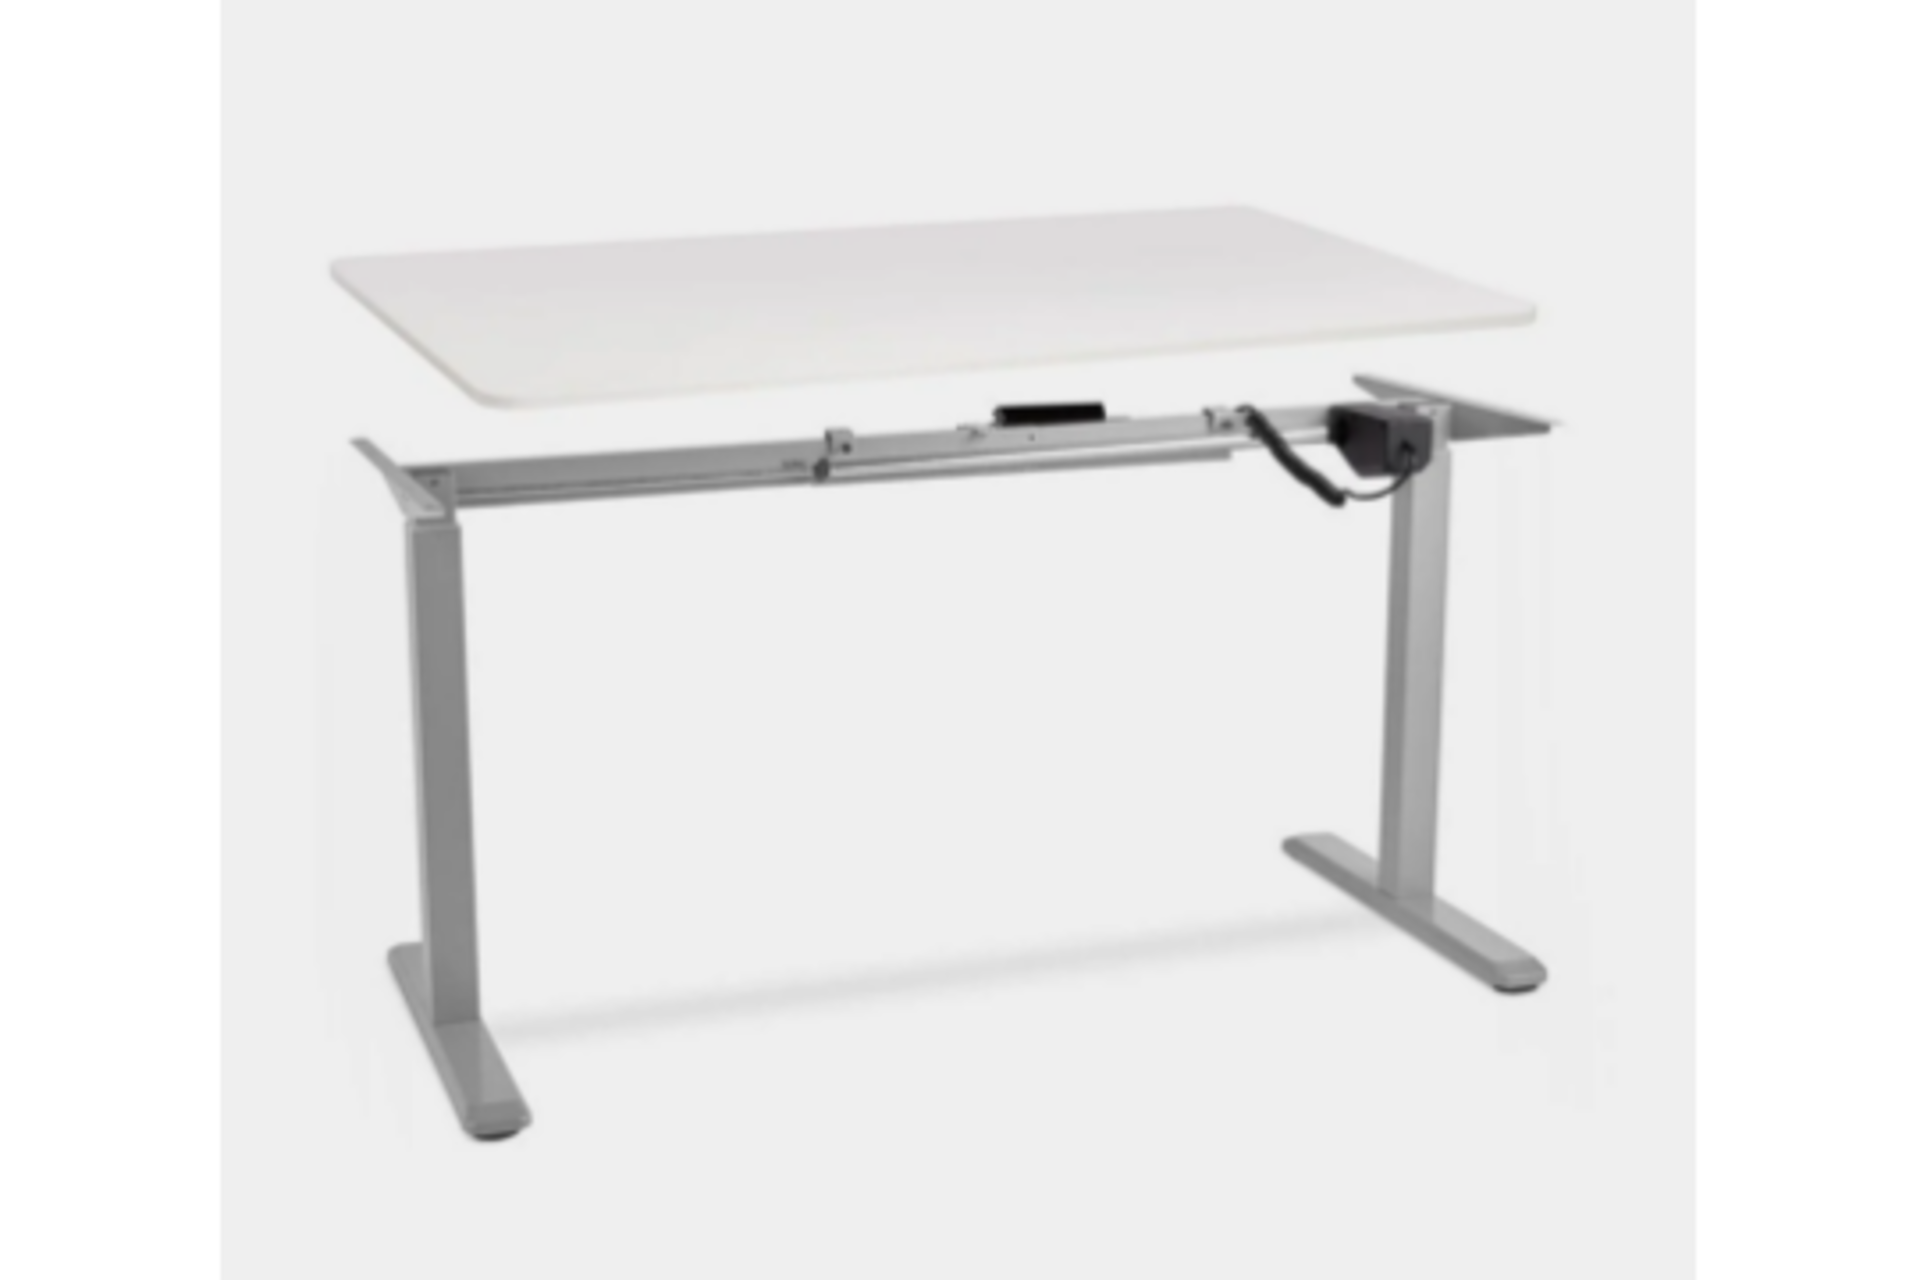 2 x Deluxe White Table Tops. - ER43. (27/11) The desktop provides long-lasting durability thanks